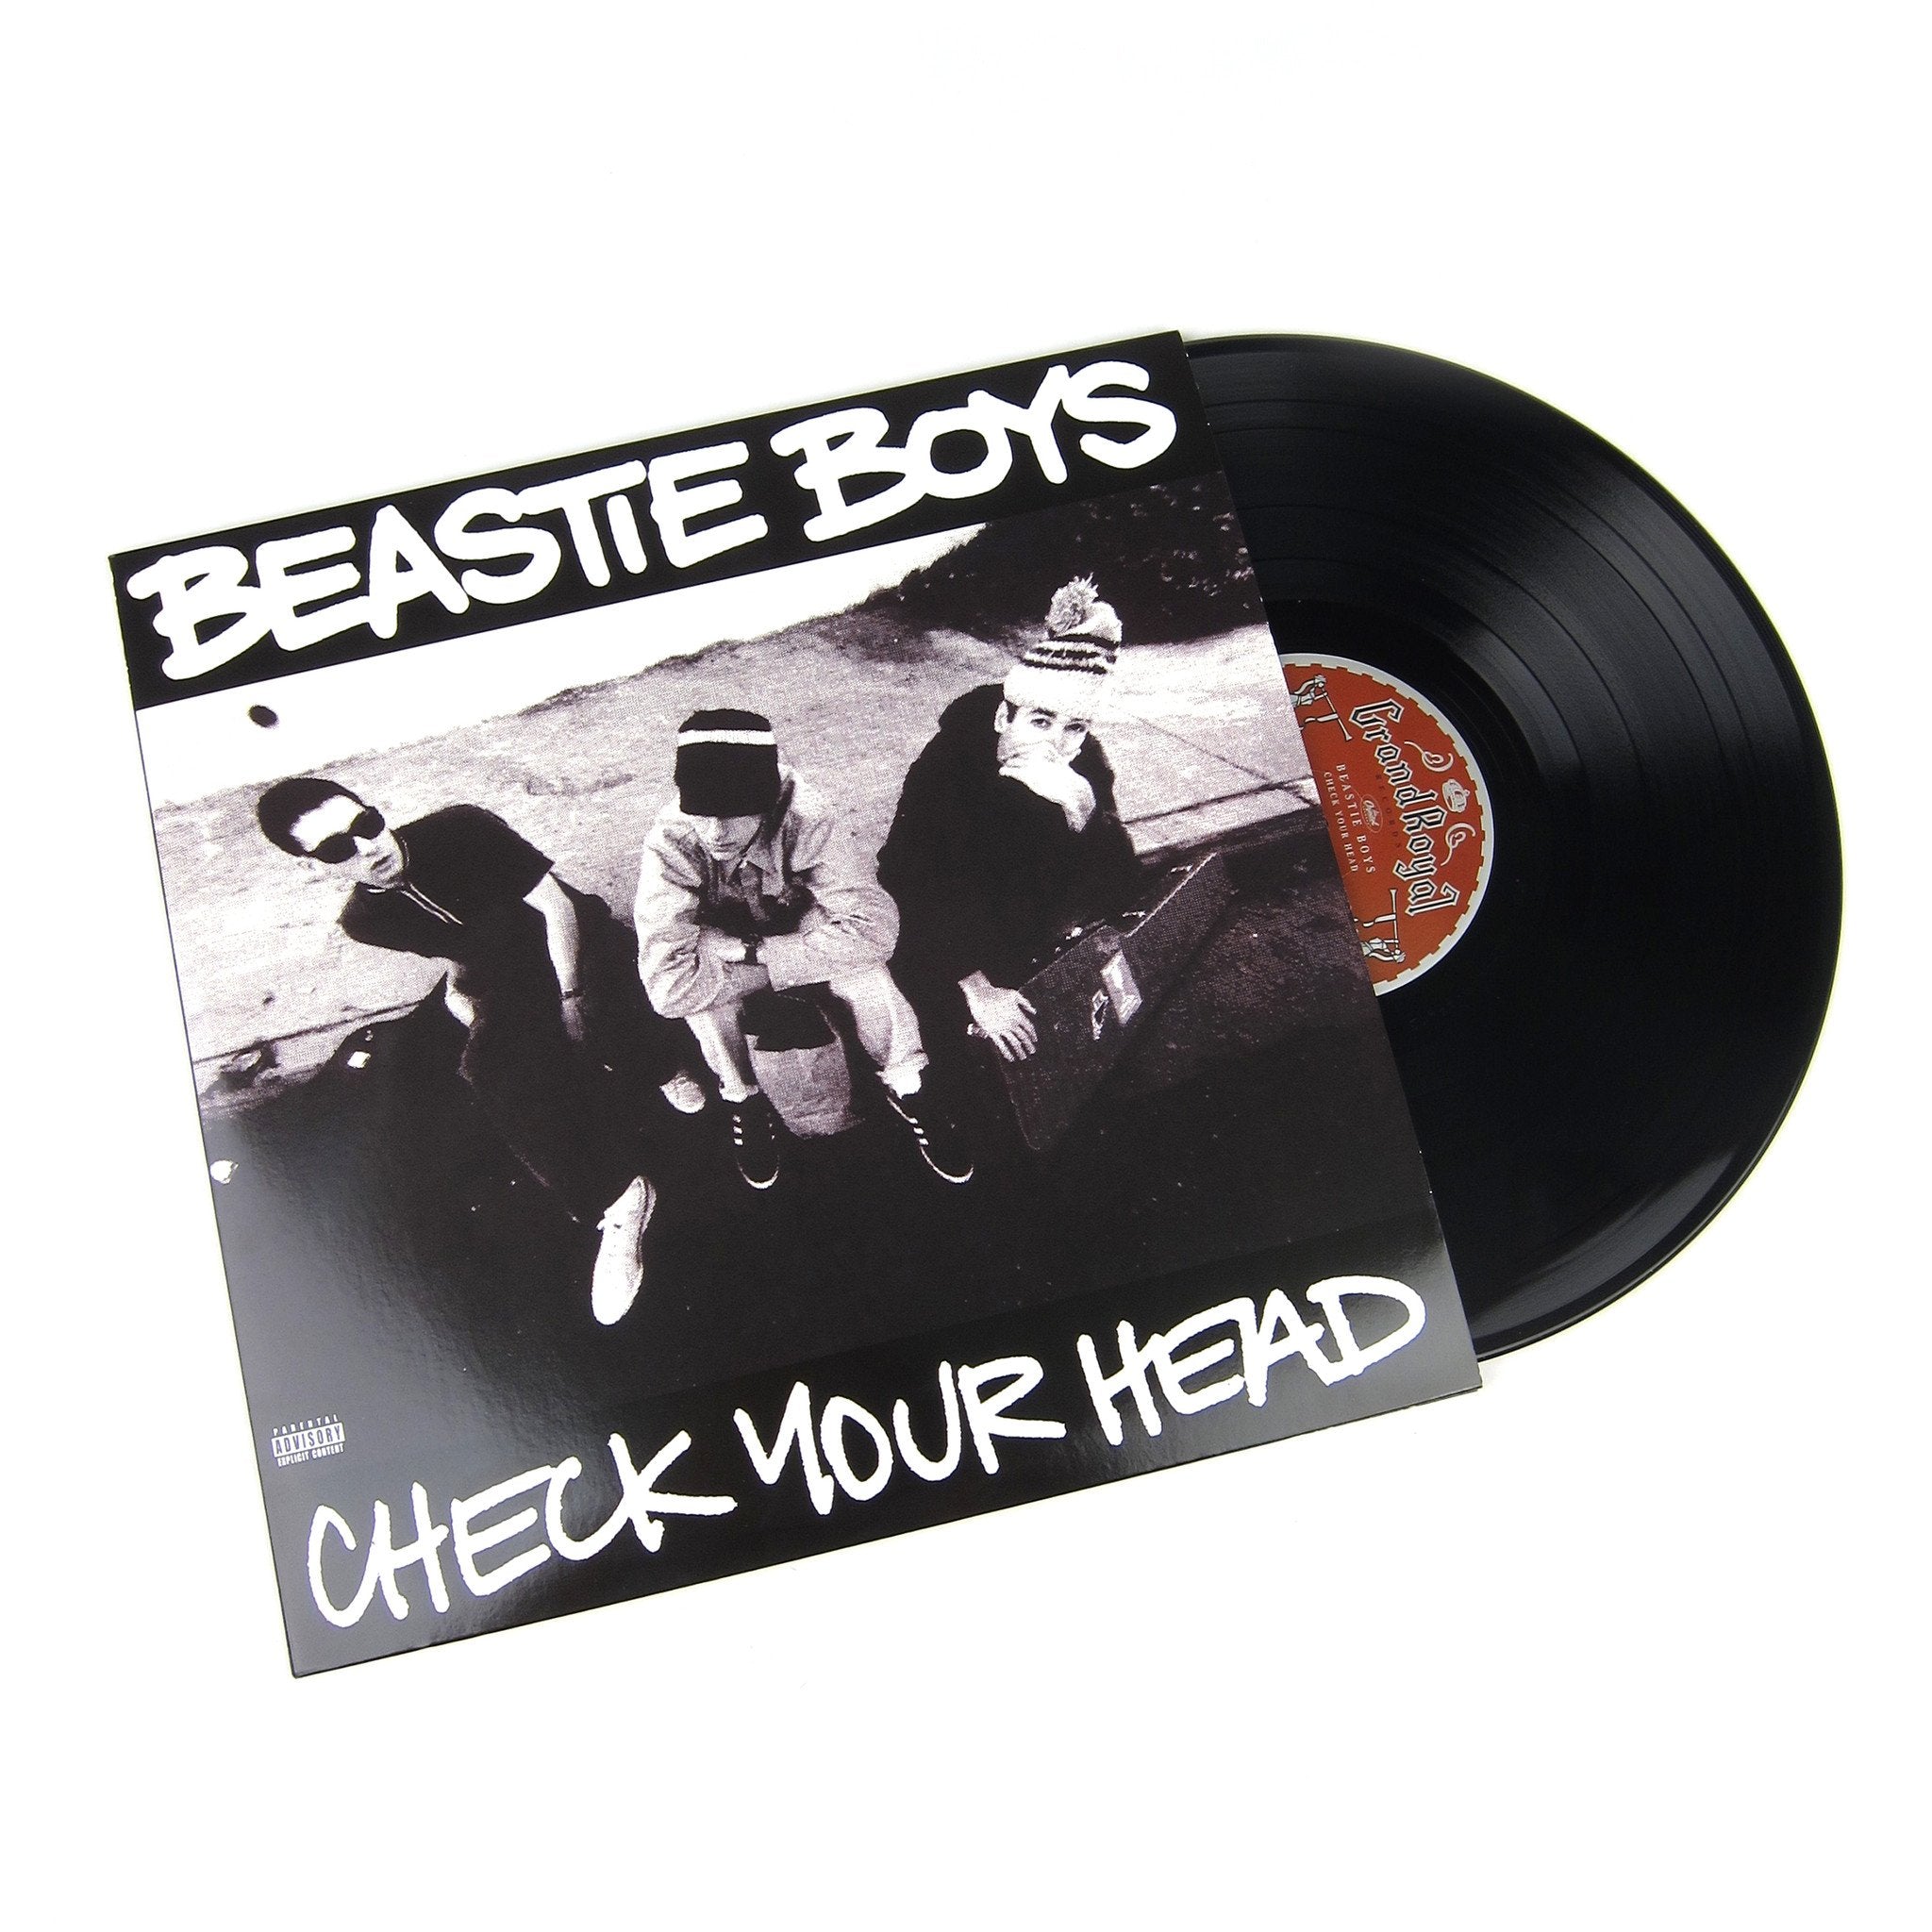 Beastie Boys: 180g Vinyl LP Album Pack (Paul's Boutique, Check Your Head, Ill Communication)